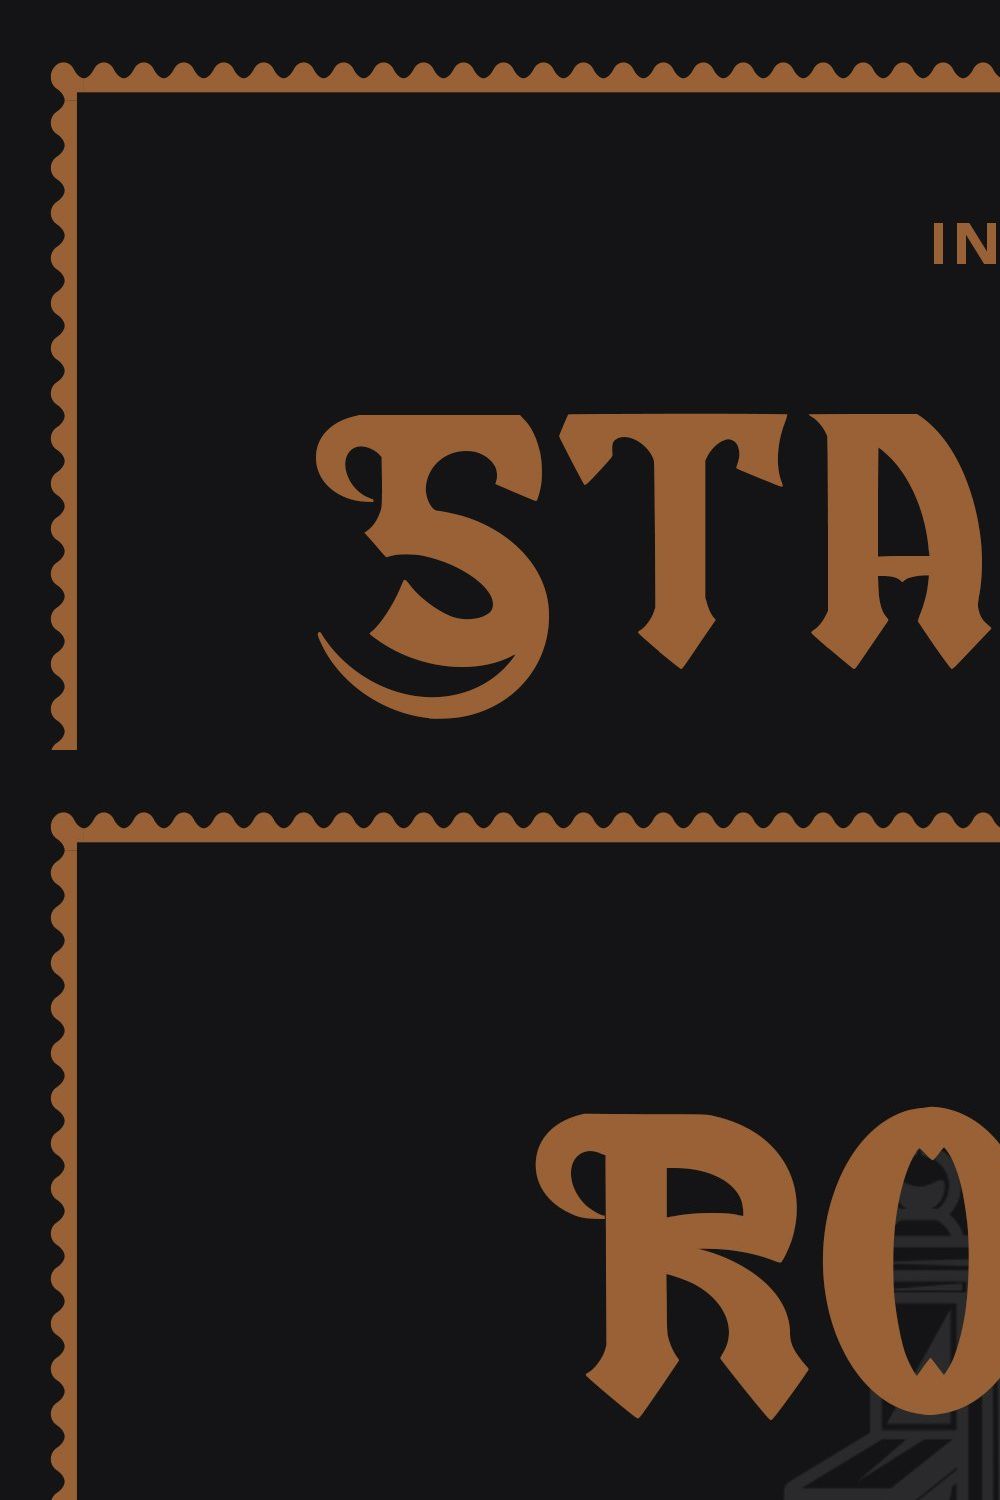 Stamford Castle - Blackletter Font pinterest preview image.